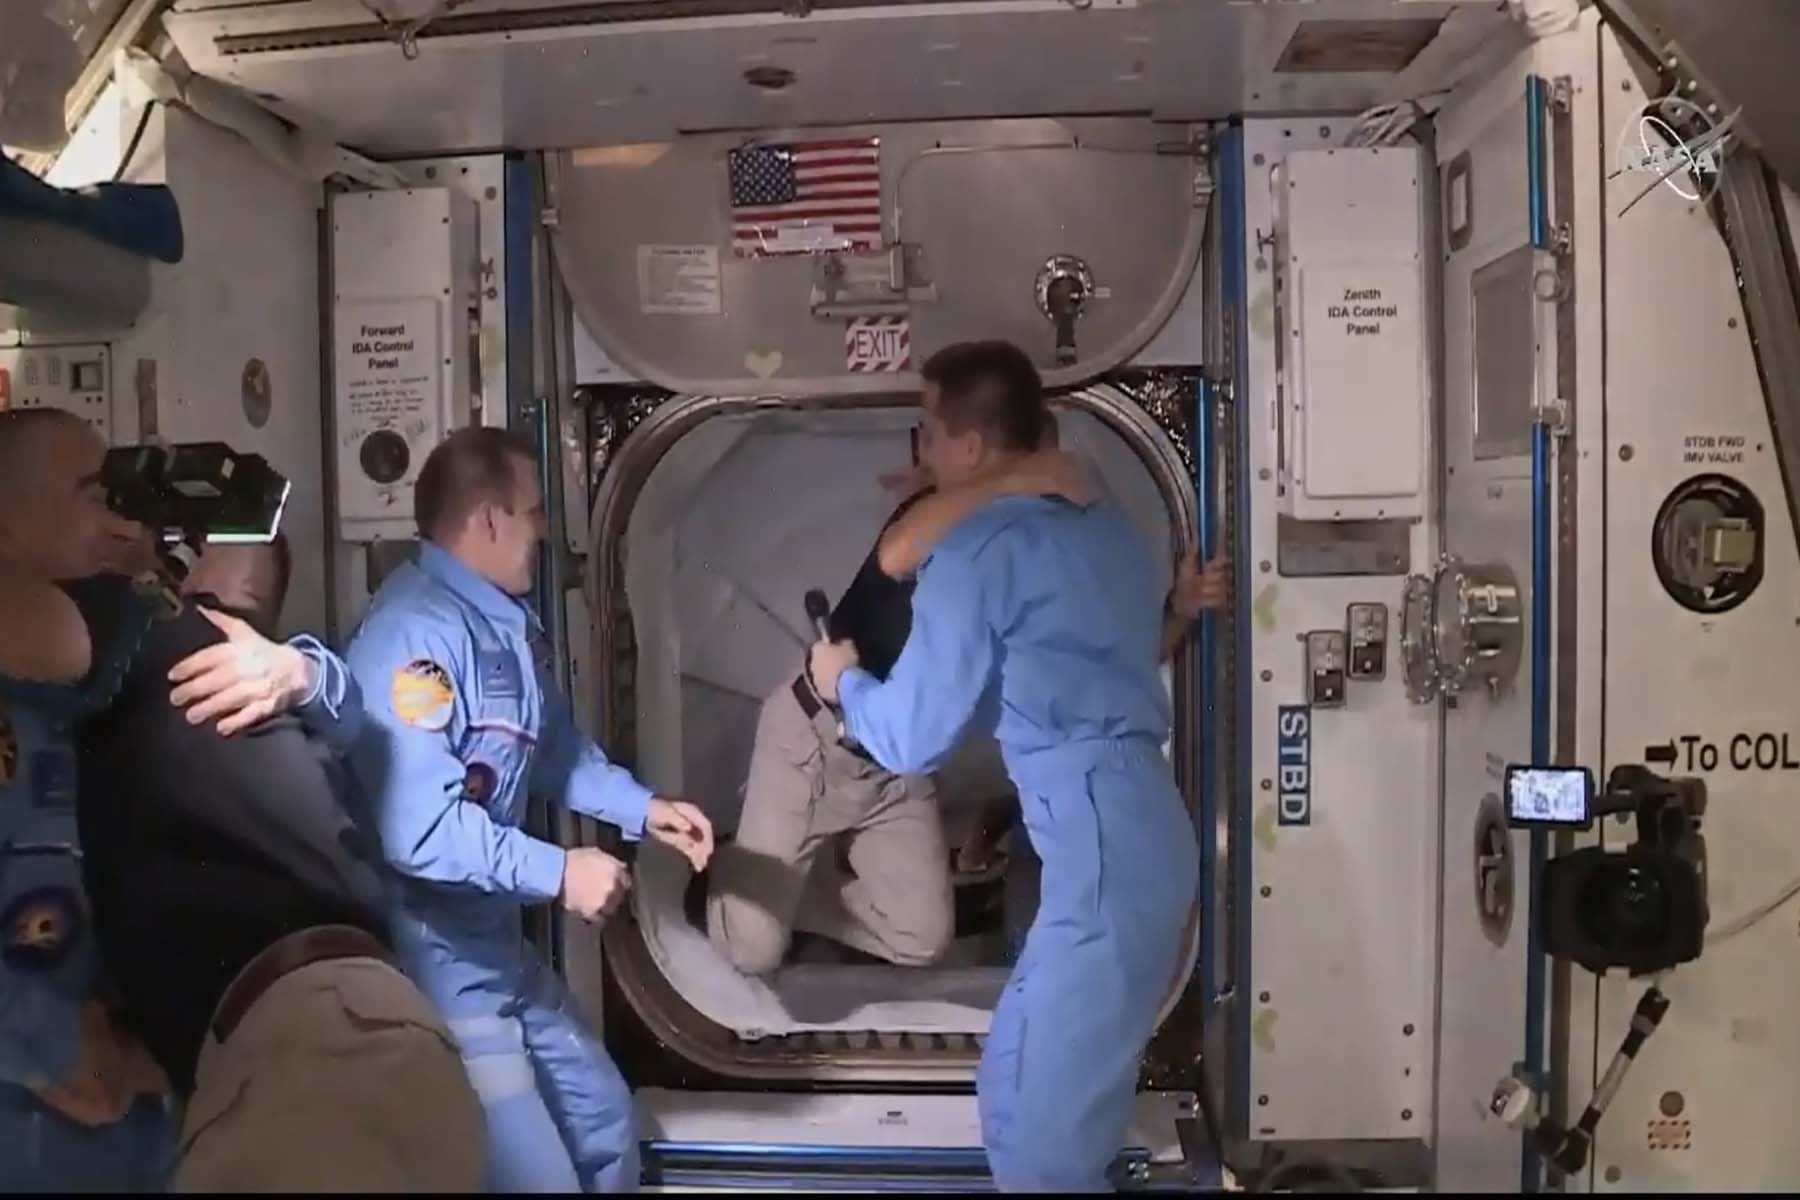 Doug Hurley, de 53 años, y Bob Behnkhen, de 49, que despegaron la víspera en un cohete Falcon 9 desde Florida, son los primeros astronautas en llegar a la estación espacial gracias a un vehículo de una empresa privada. Foto: AFP